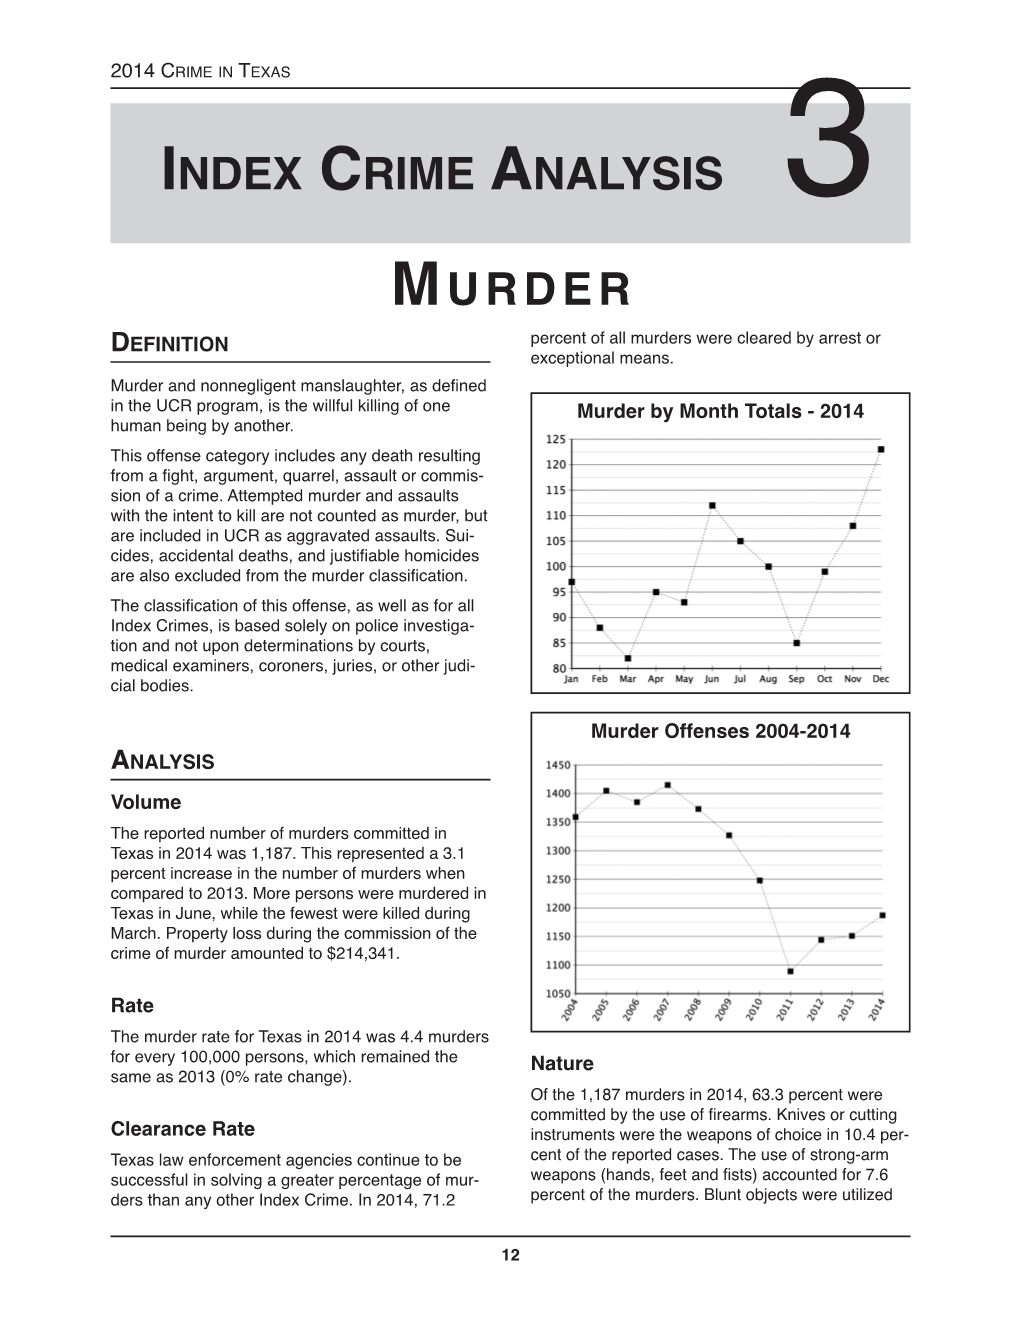 Murder Index Crime Analysis 3